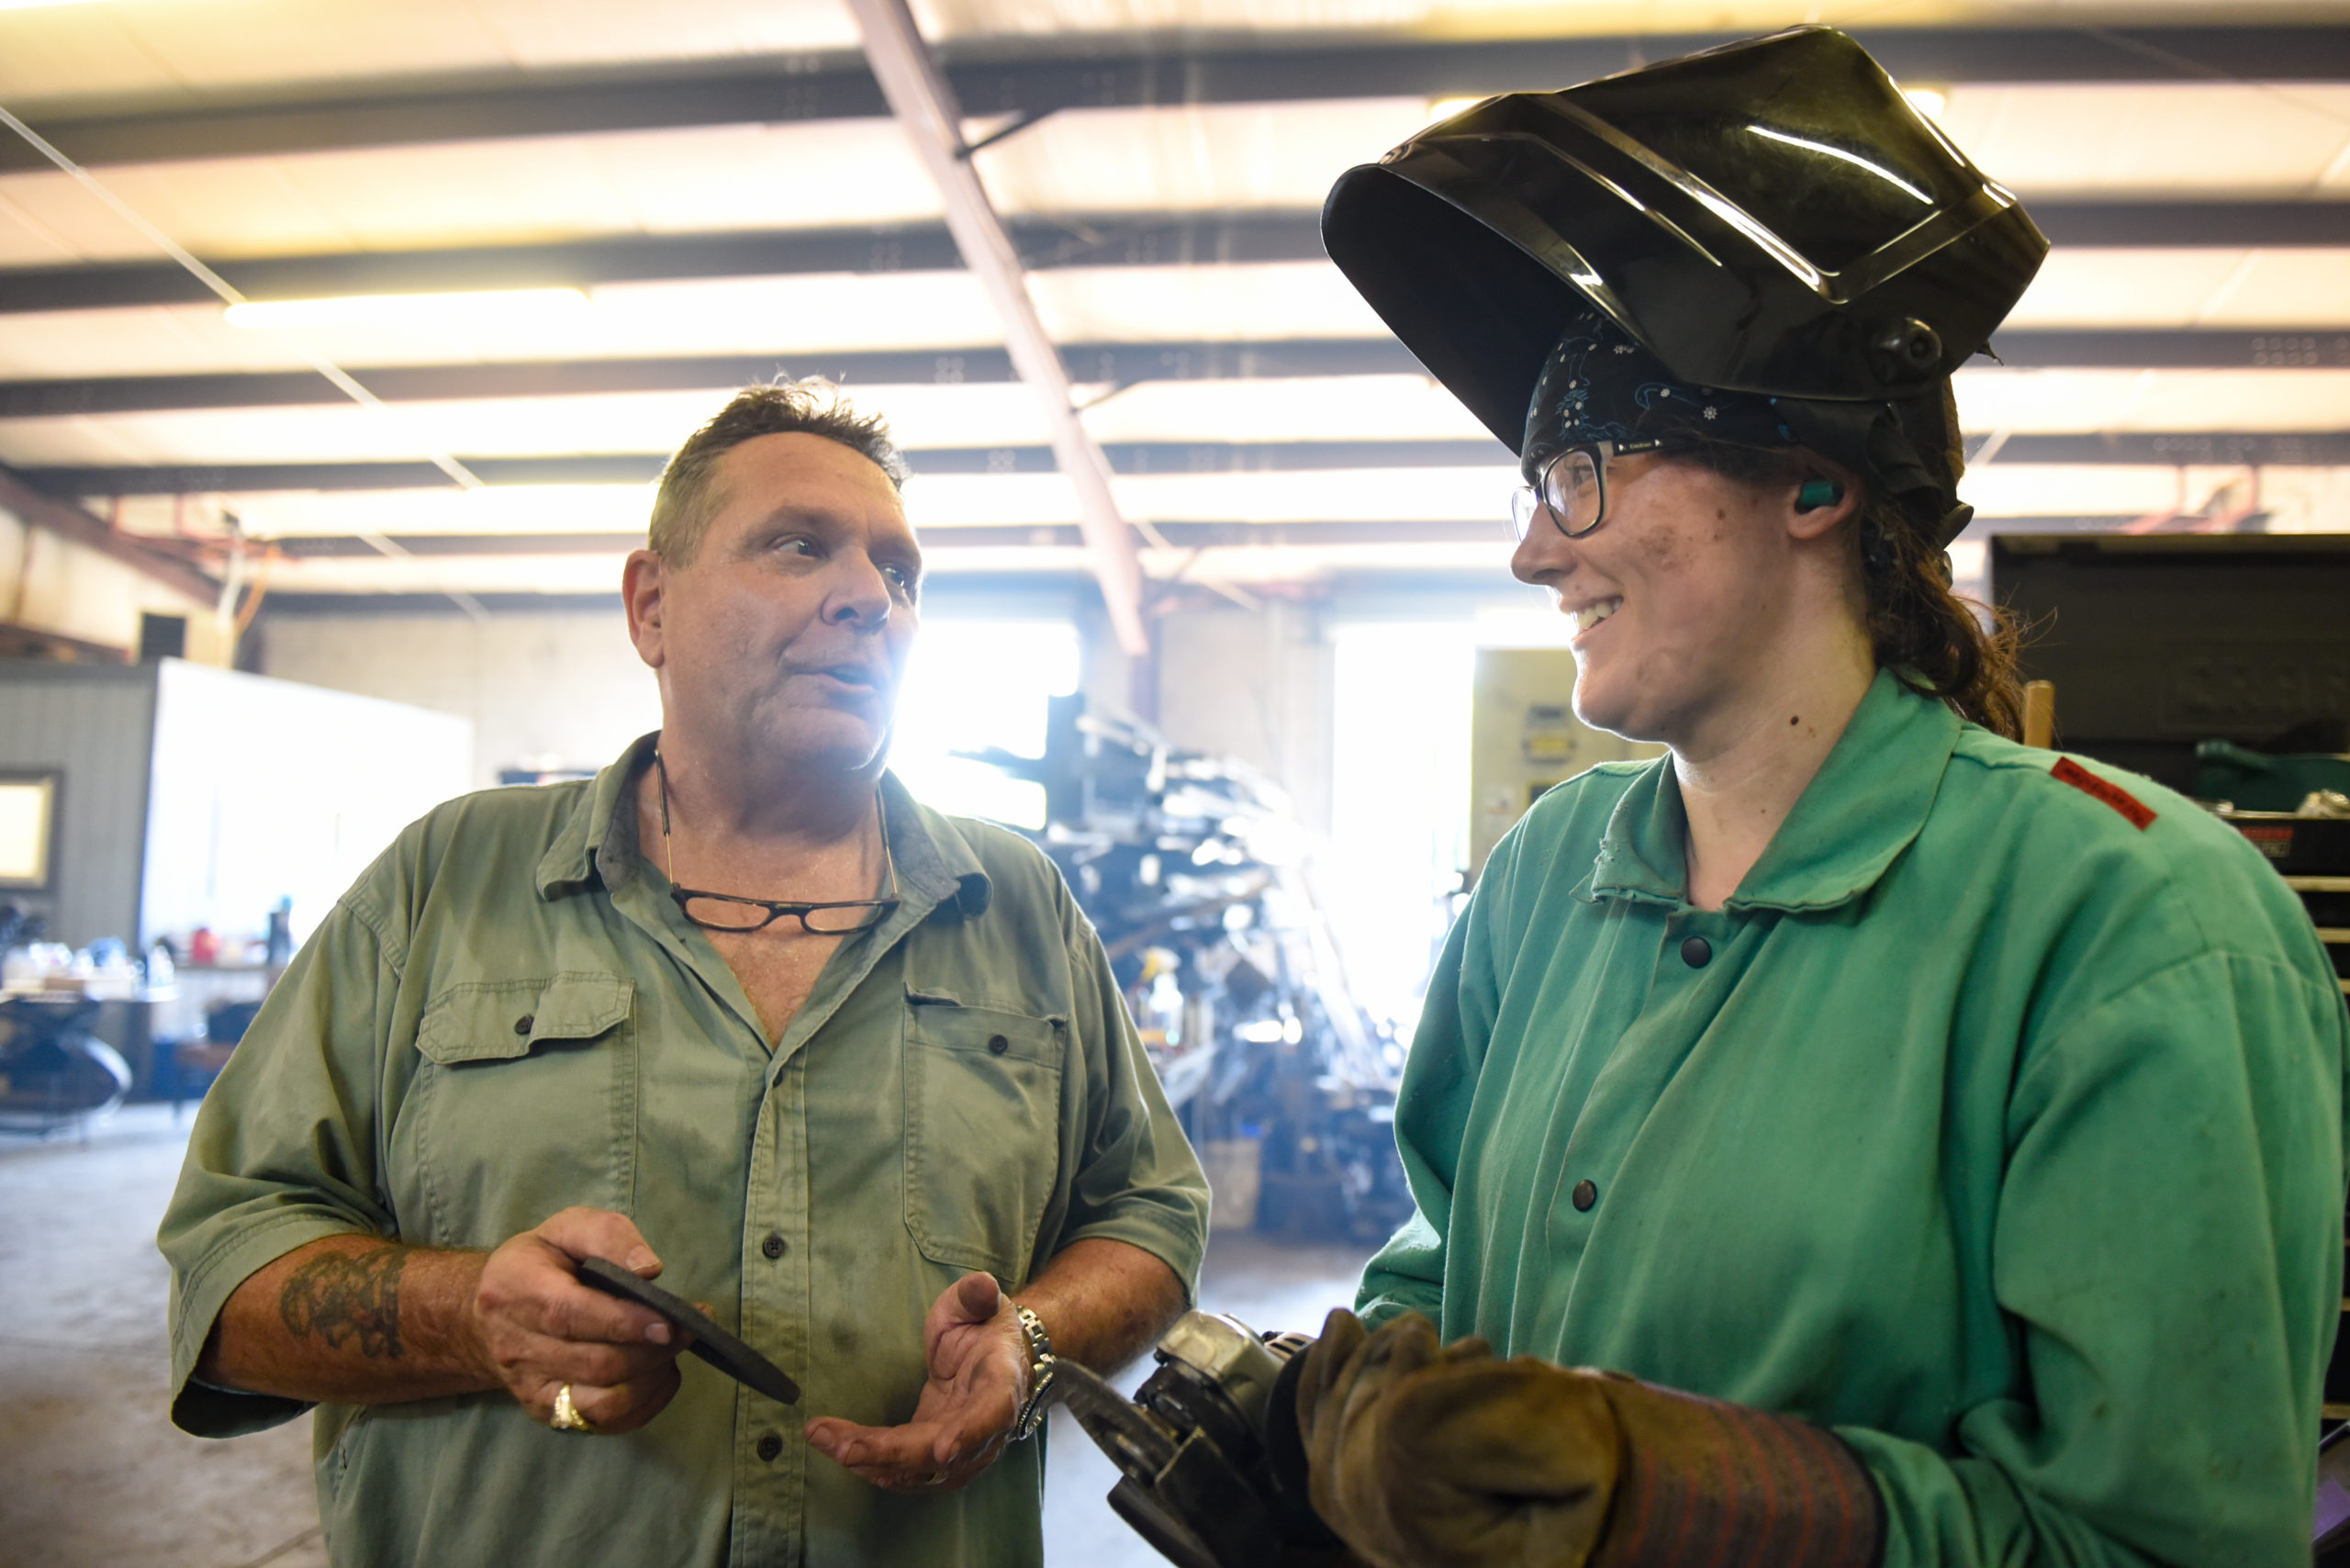 Female welder talking shop